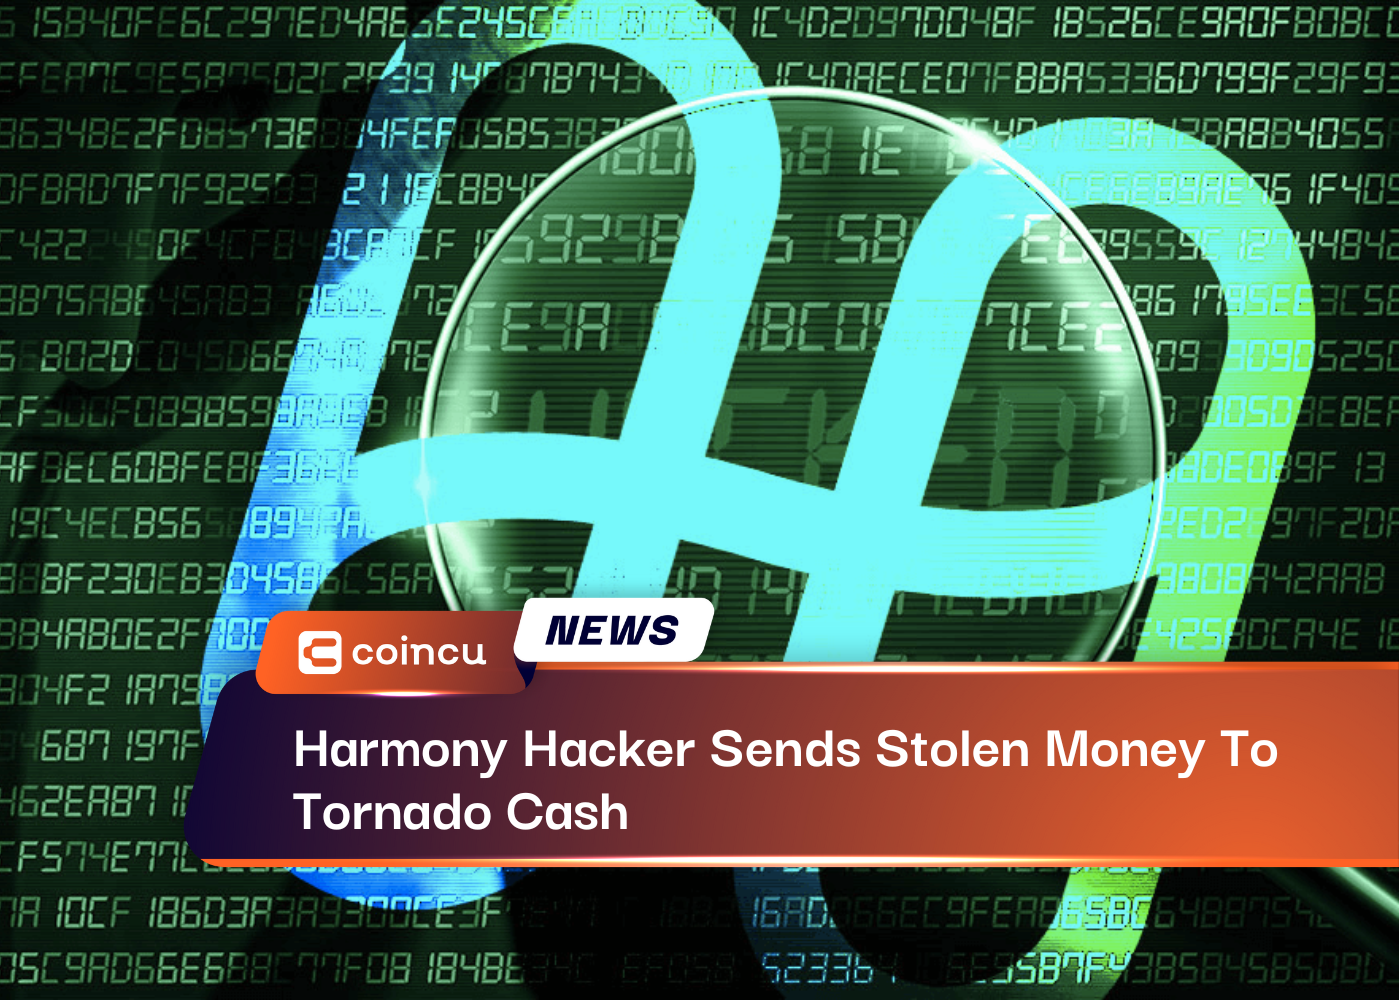 Harmony Hacker Sends Stolen Money To Tornado Cash